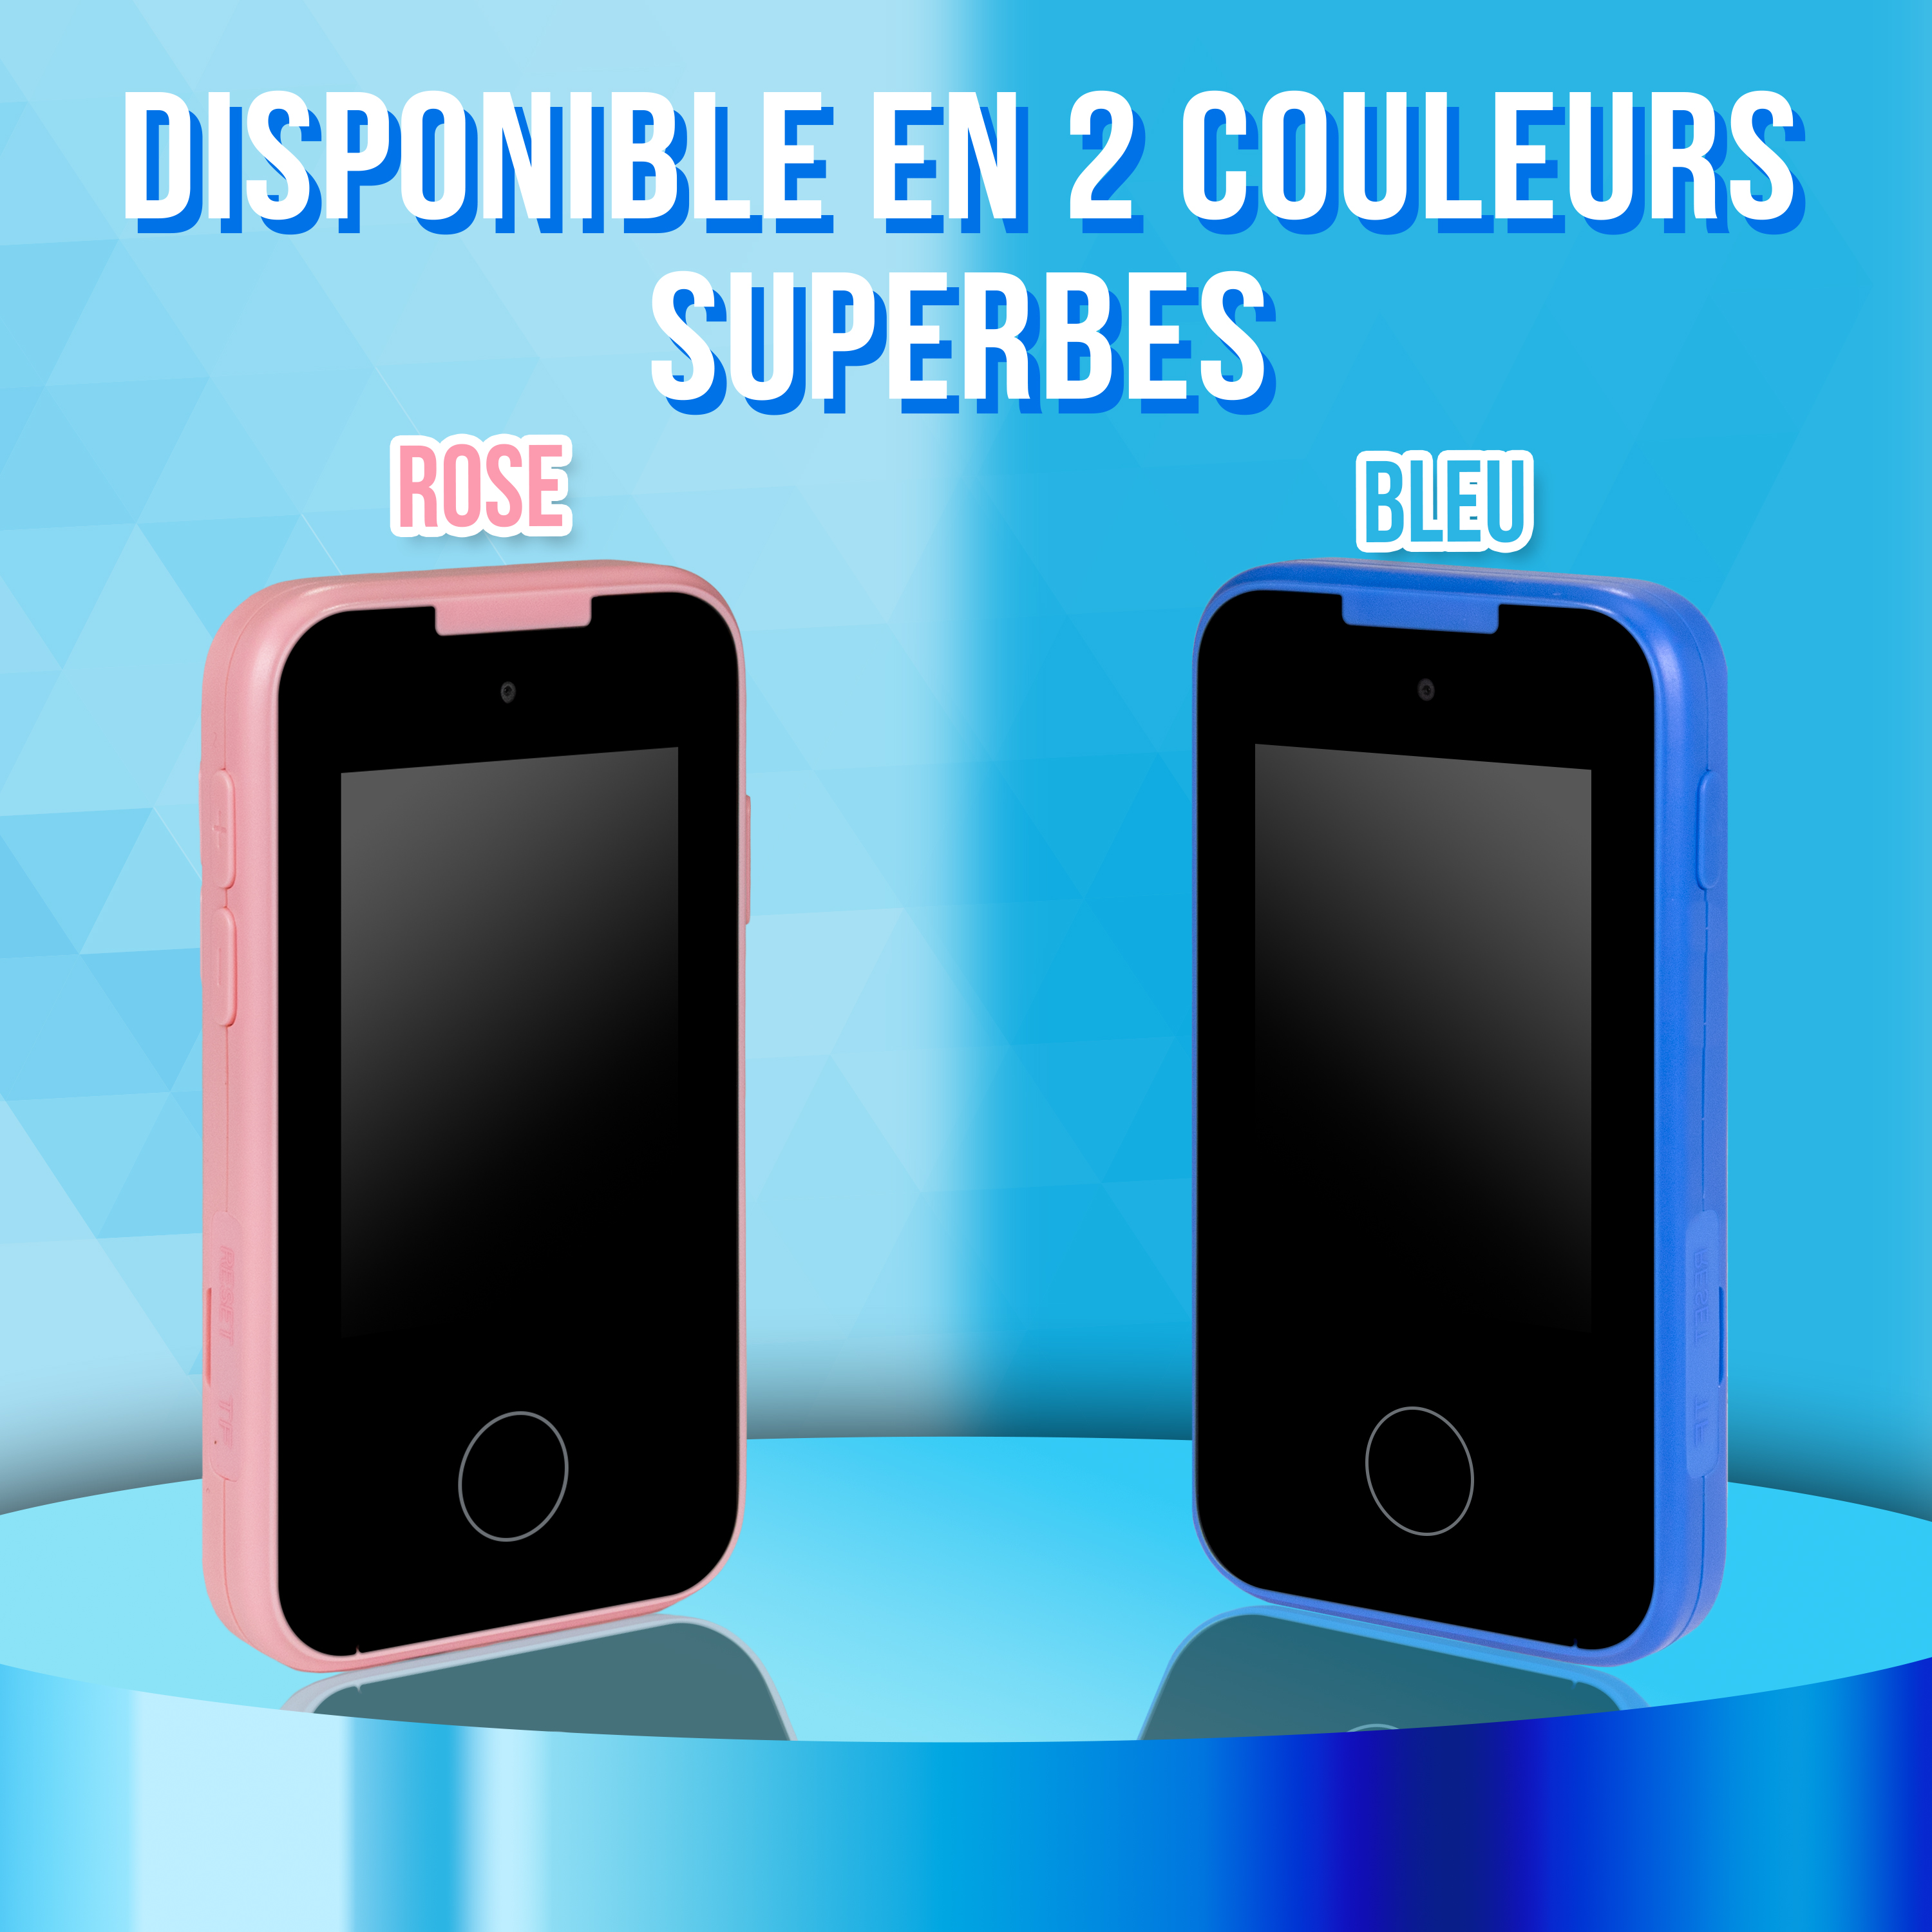 Quelle couleur de téléphone portable choisirez-vous ? Bleu ou rose ?